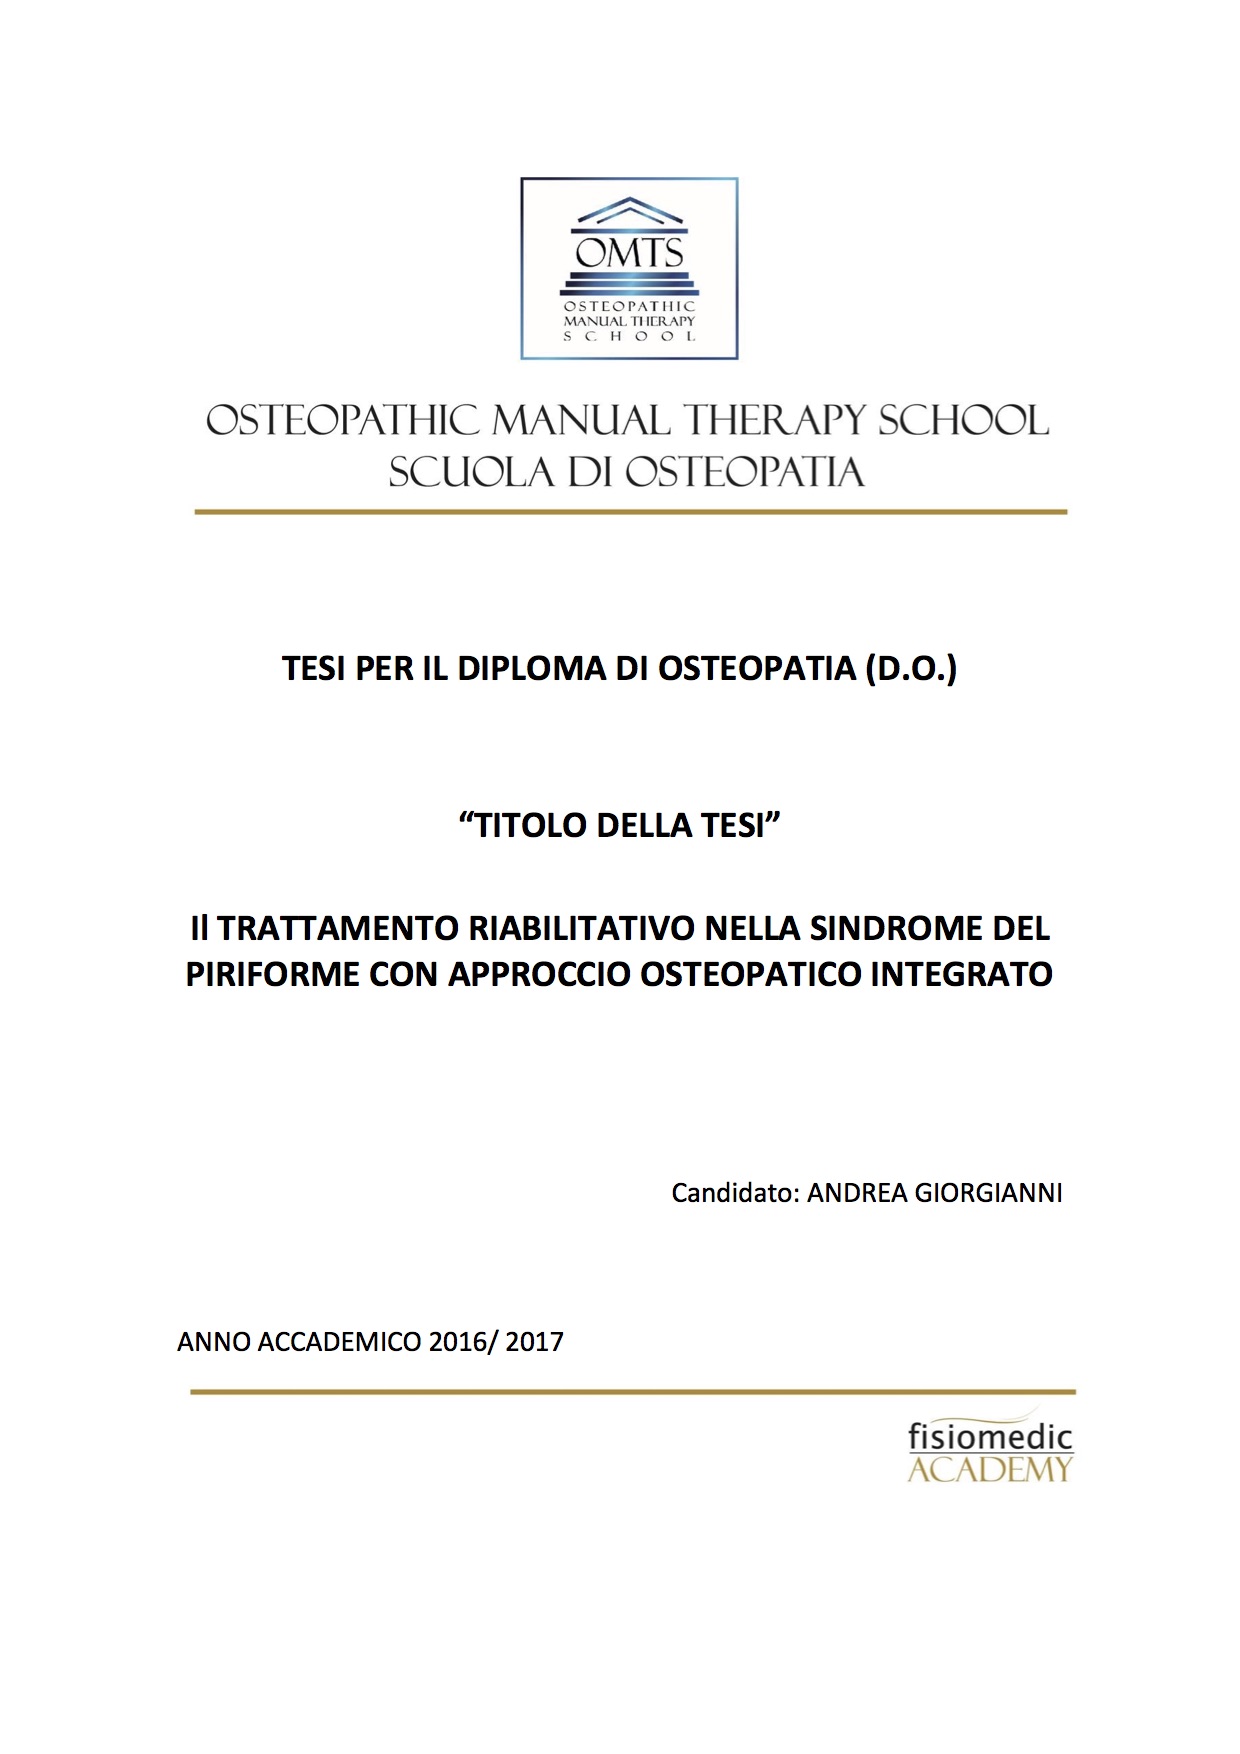 Andrea Giorgianni Tesi Diploma Osteopatia 2017